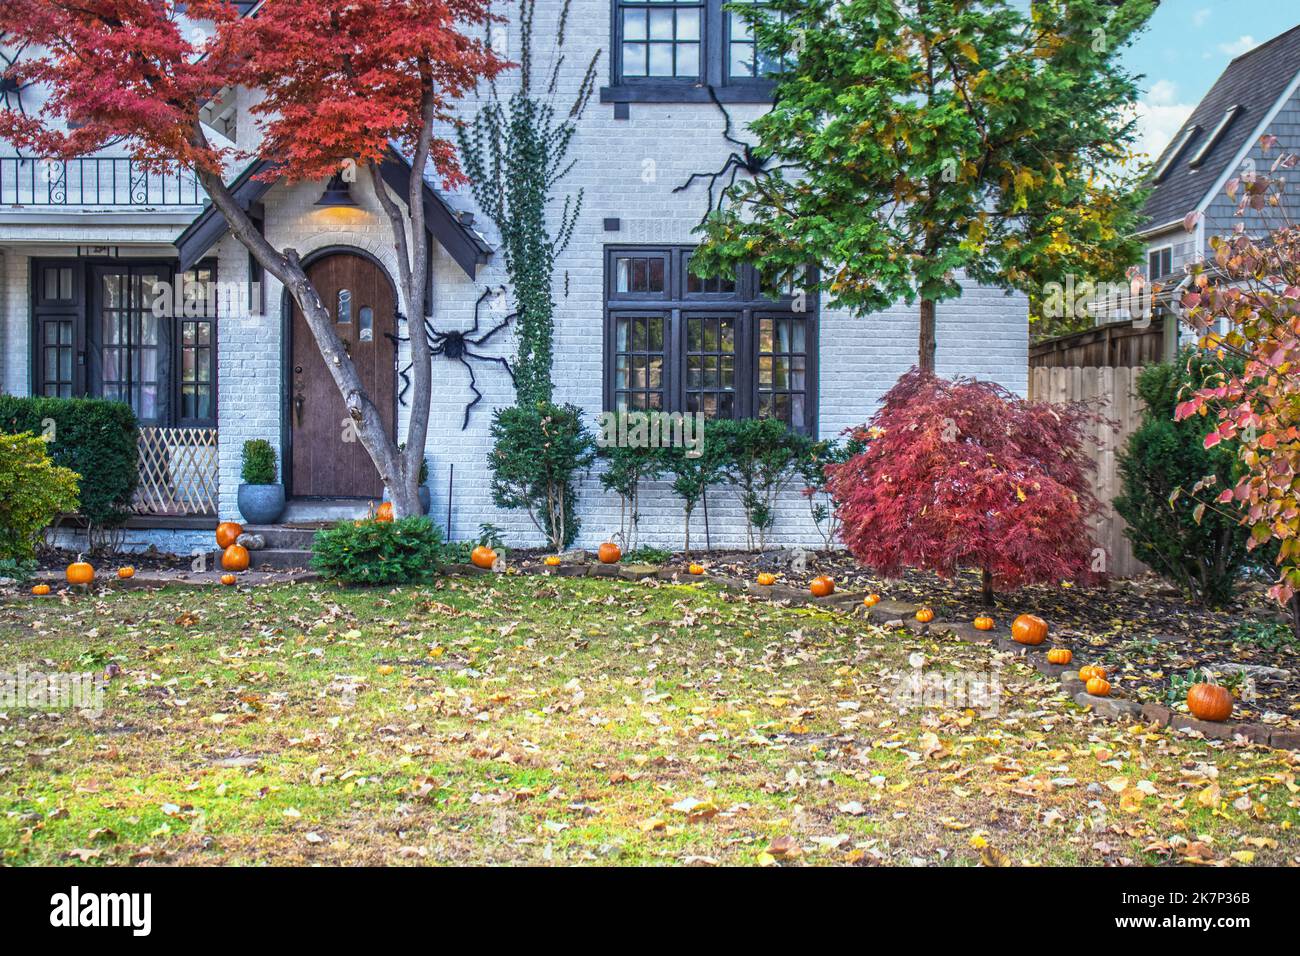 Gros plan de l'entrée de la maison individuelle en brique blanche avec des vinces et des érables d'automne décorés de citrouilles dans le jardin et des araignées géantes d'Halloween cra Banque D'Images